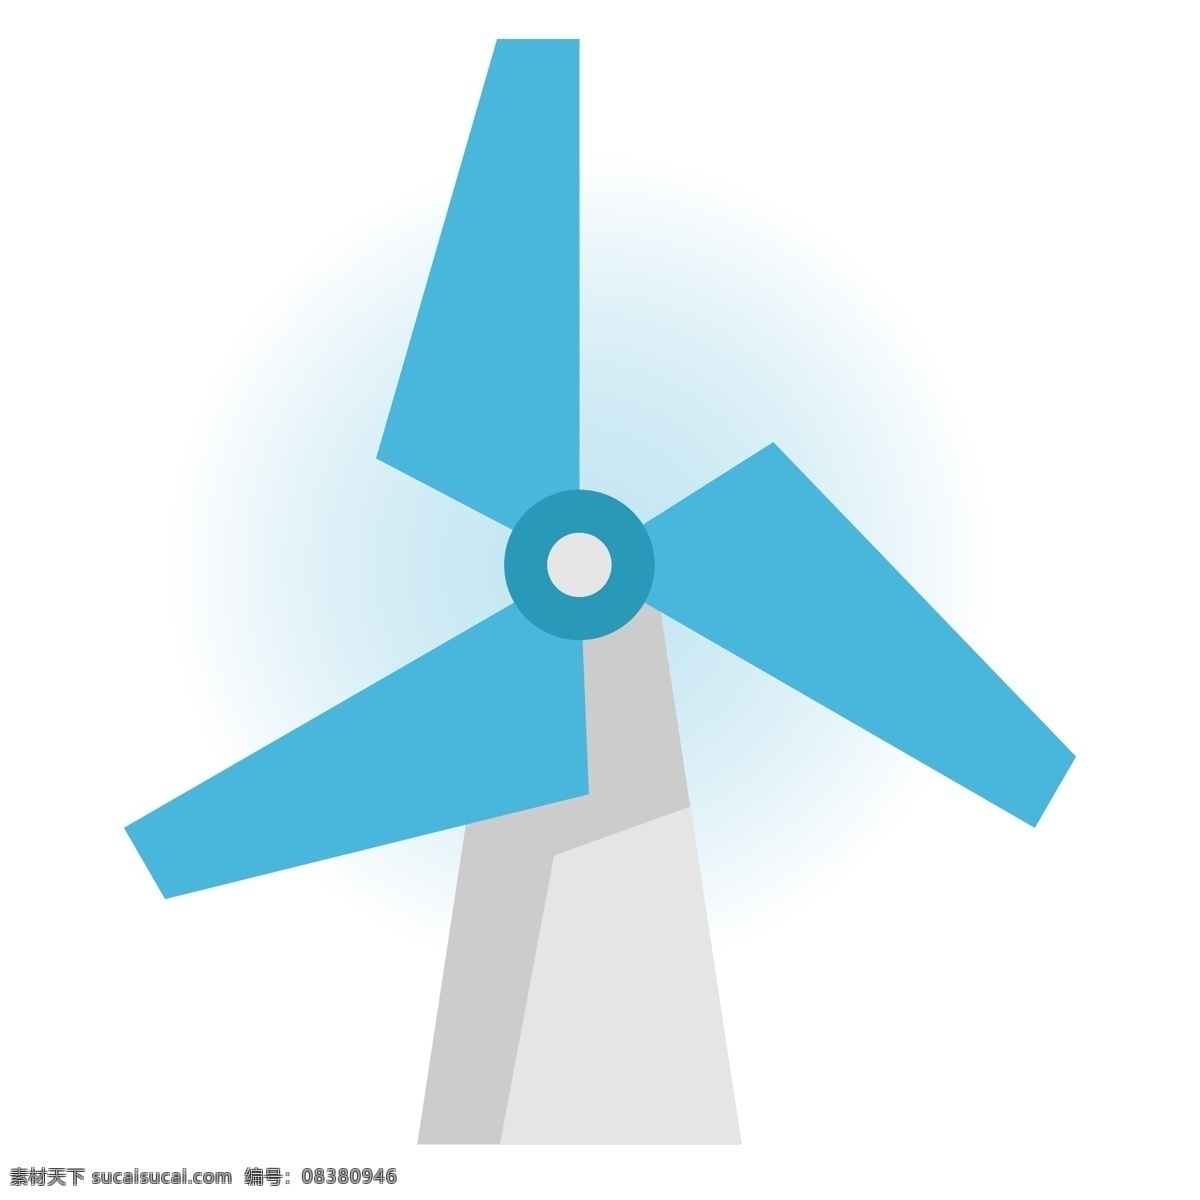 风力 发电 风车 插画 蓝色的扇叶 卡通插画 风车插画 环保插画 低碳环保 风力发电 白色的基座